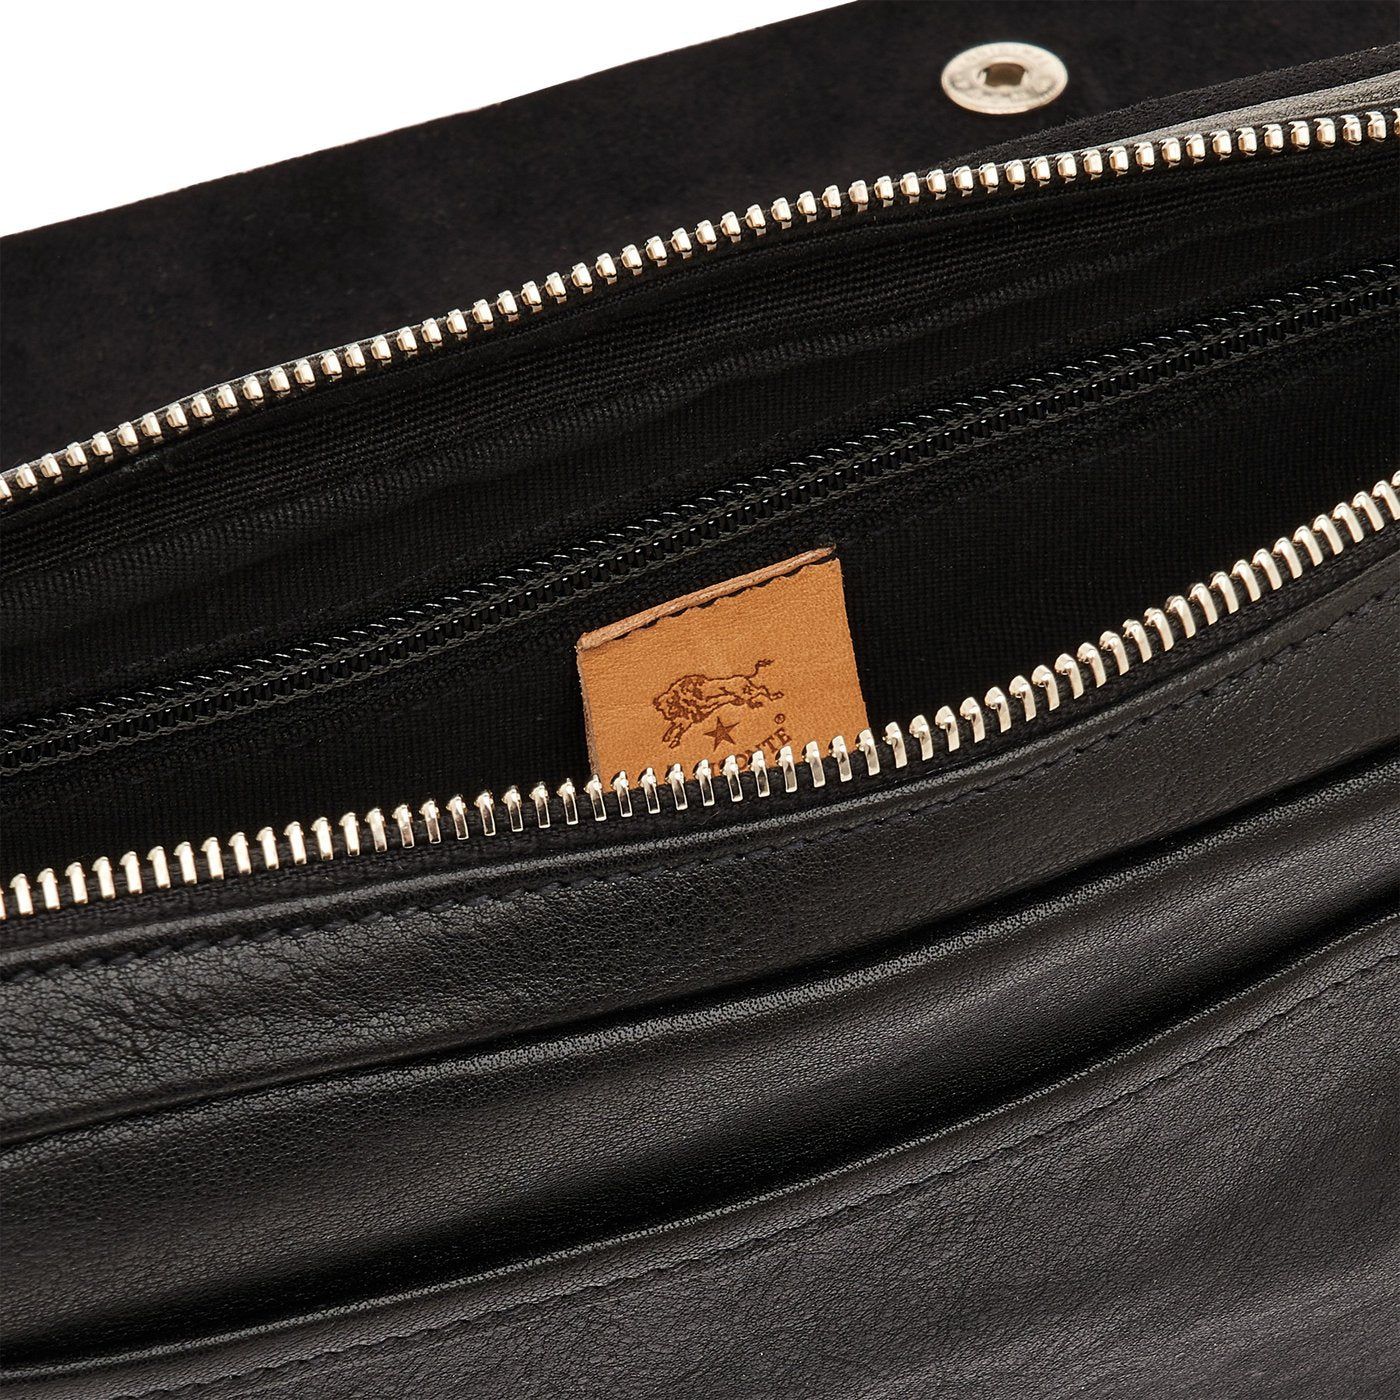 Brolio | Men's belt bag in vintage leather color black